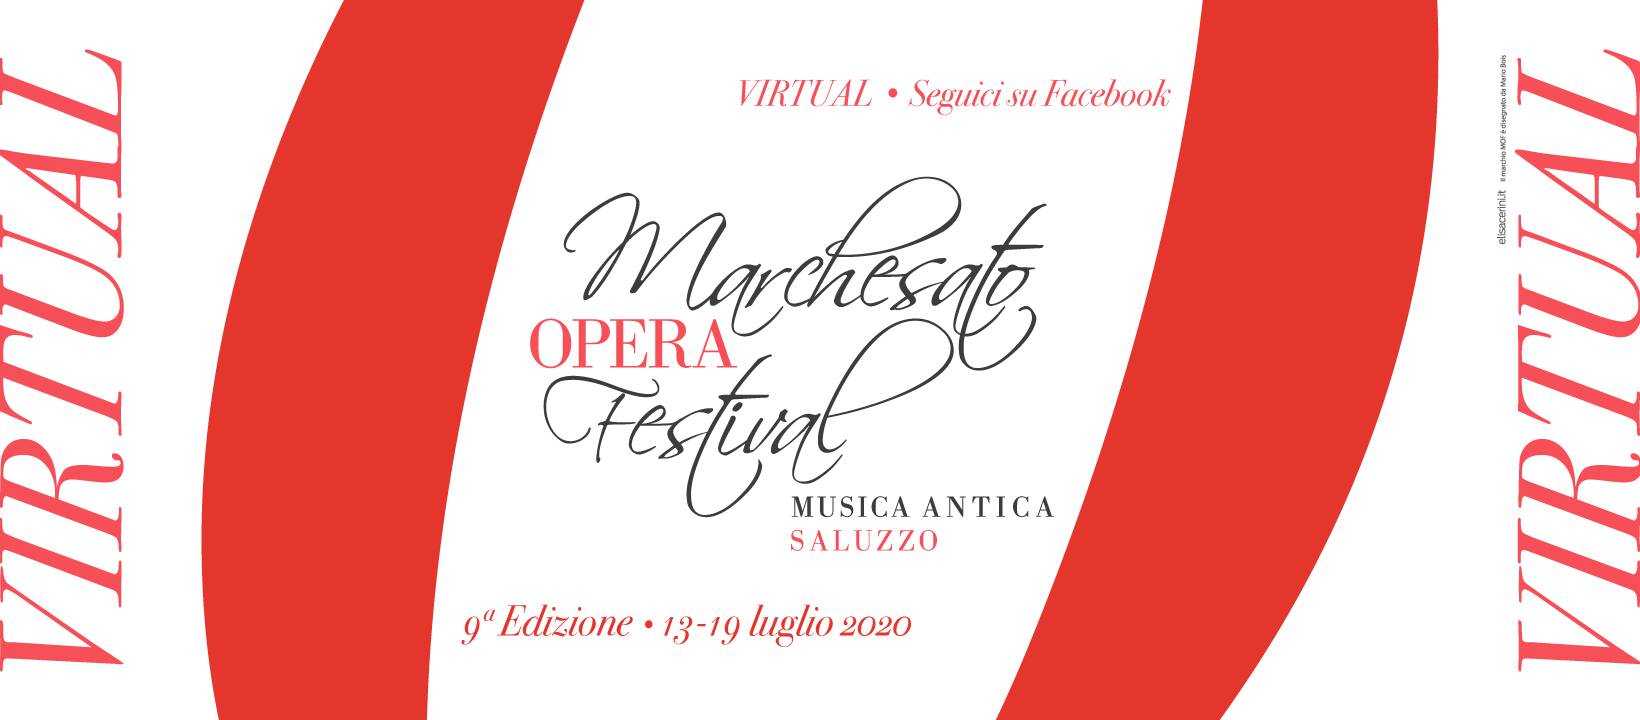 MOF, la IX edizione del Marchesato Opera Festival in versione “virtual”